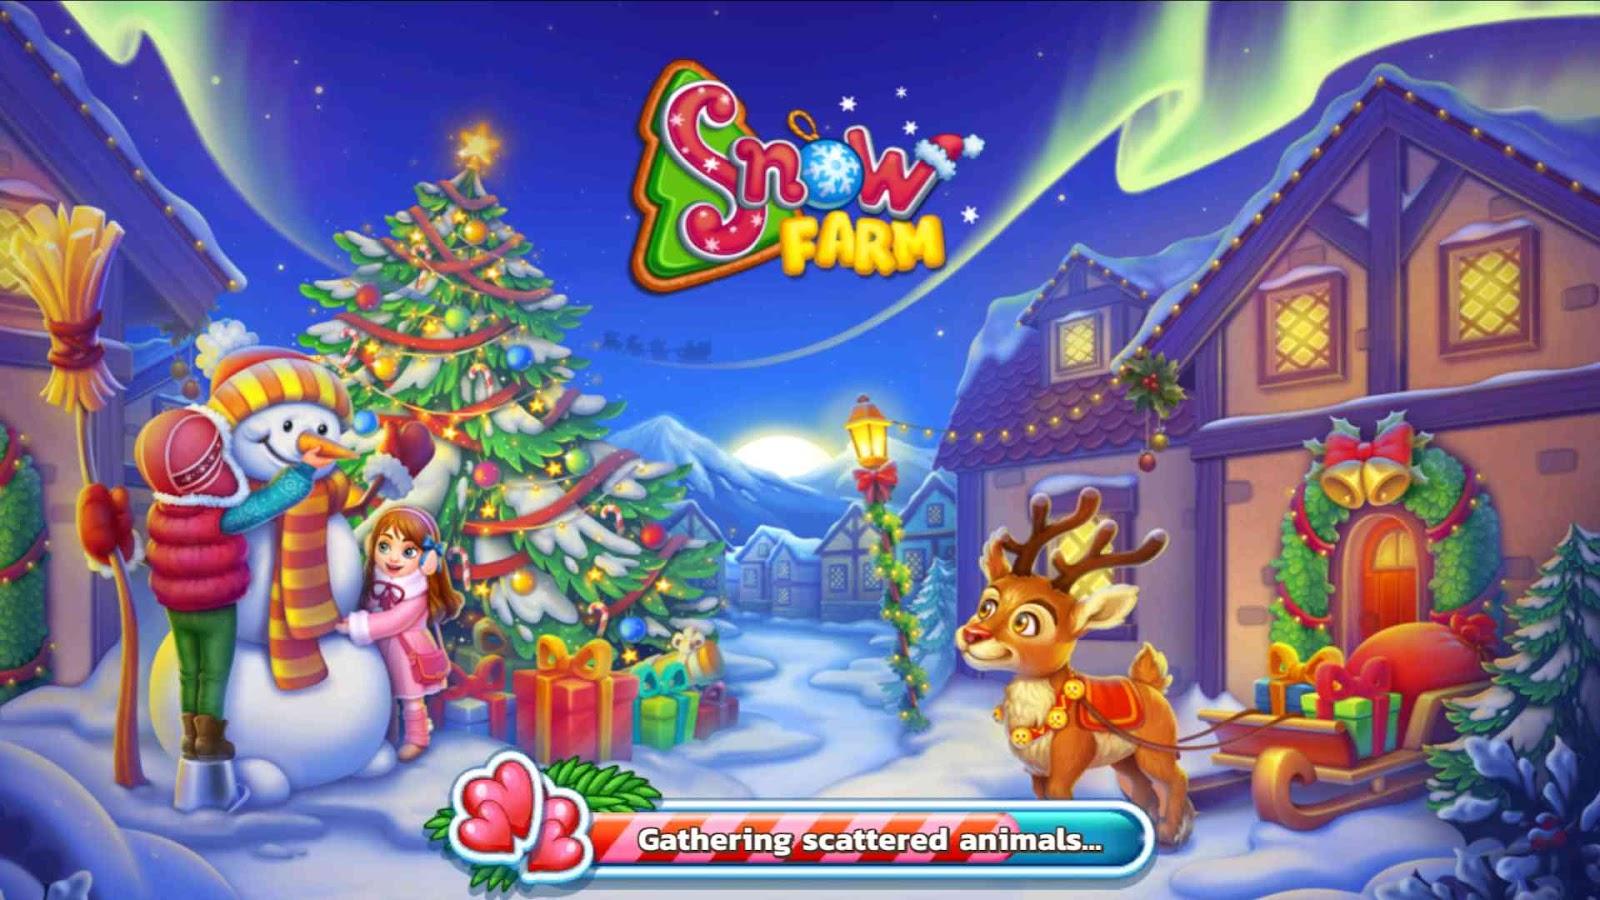 Farm Snow – Santa Family Story